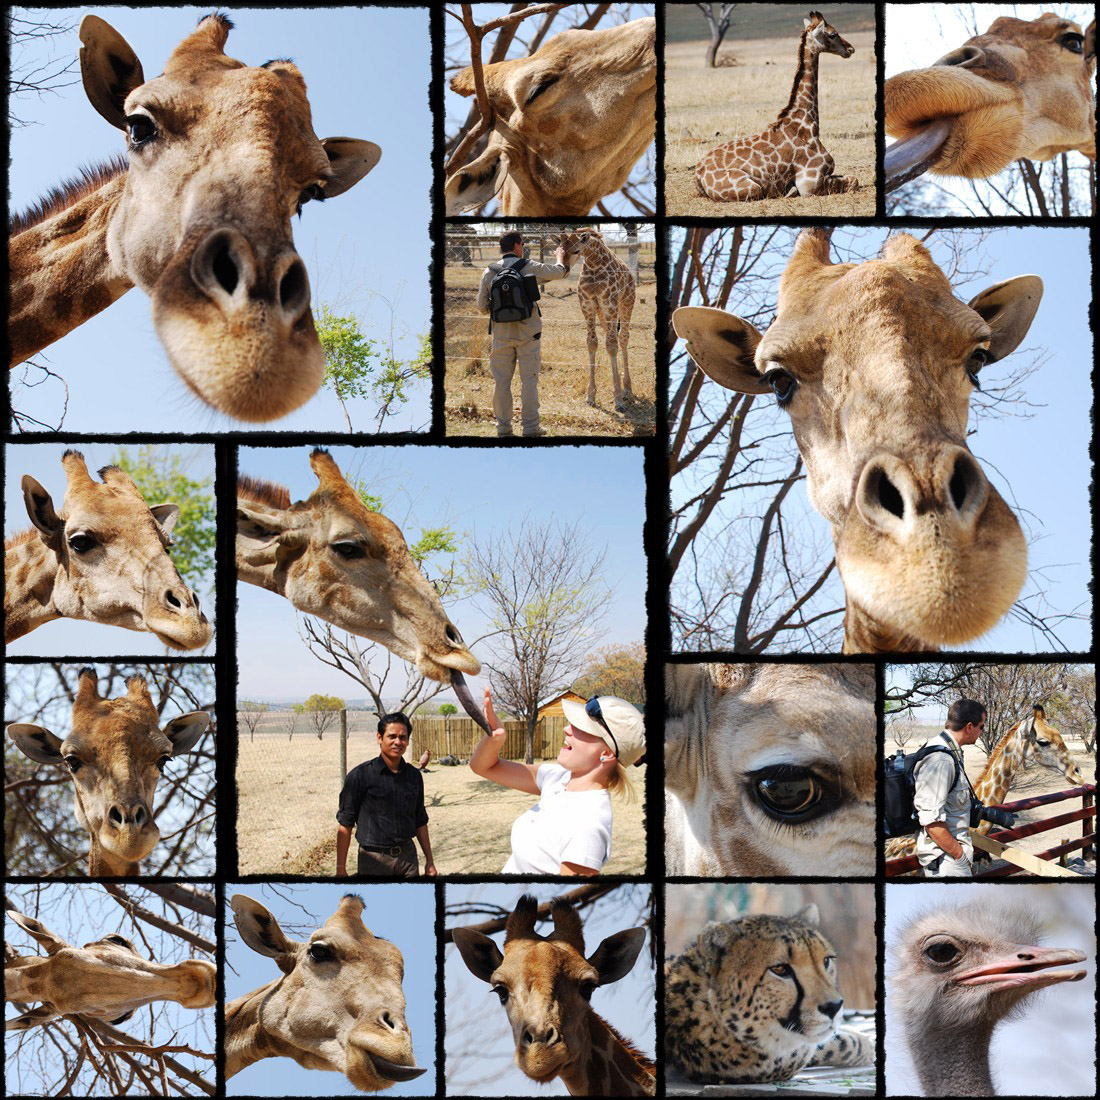 lion park, johannesburg, park lwów, leoni sud africa, zyrafa, zyrafka, zyrafki, giraffa, giraffe, giraffina, giraff